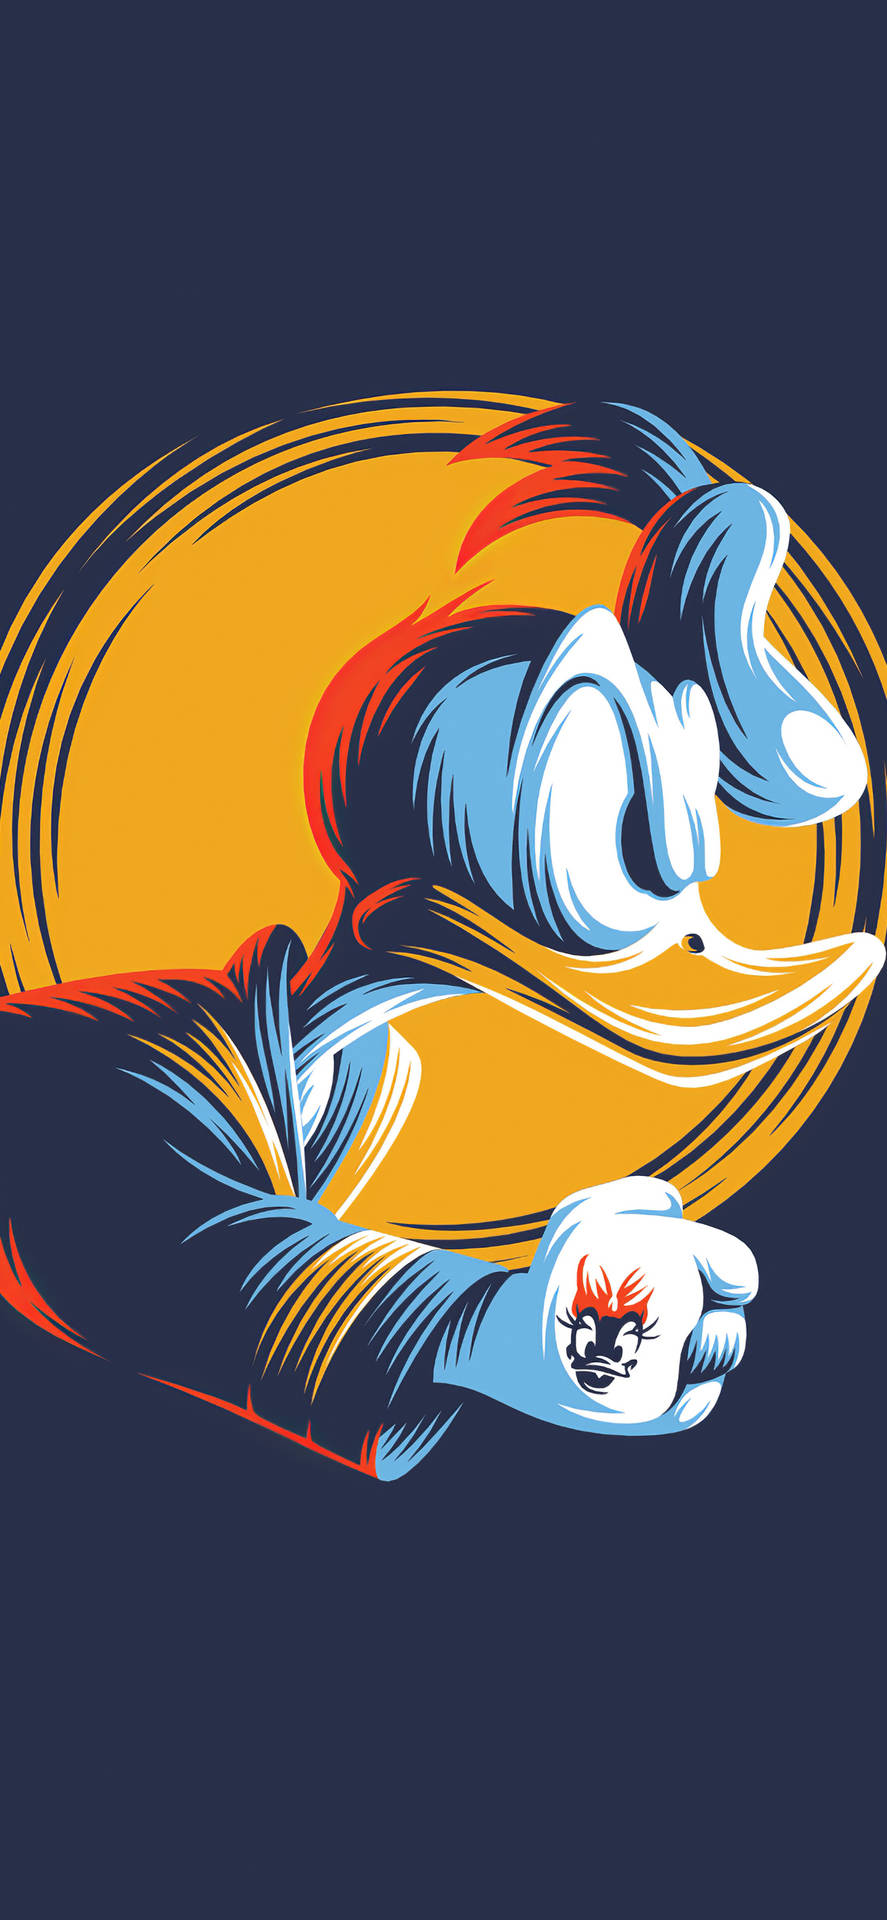 Papelde Parede De Donald Duck Art Para Iphone X Em Estilo De Desenho Animado. Papel de Parede